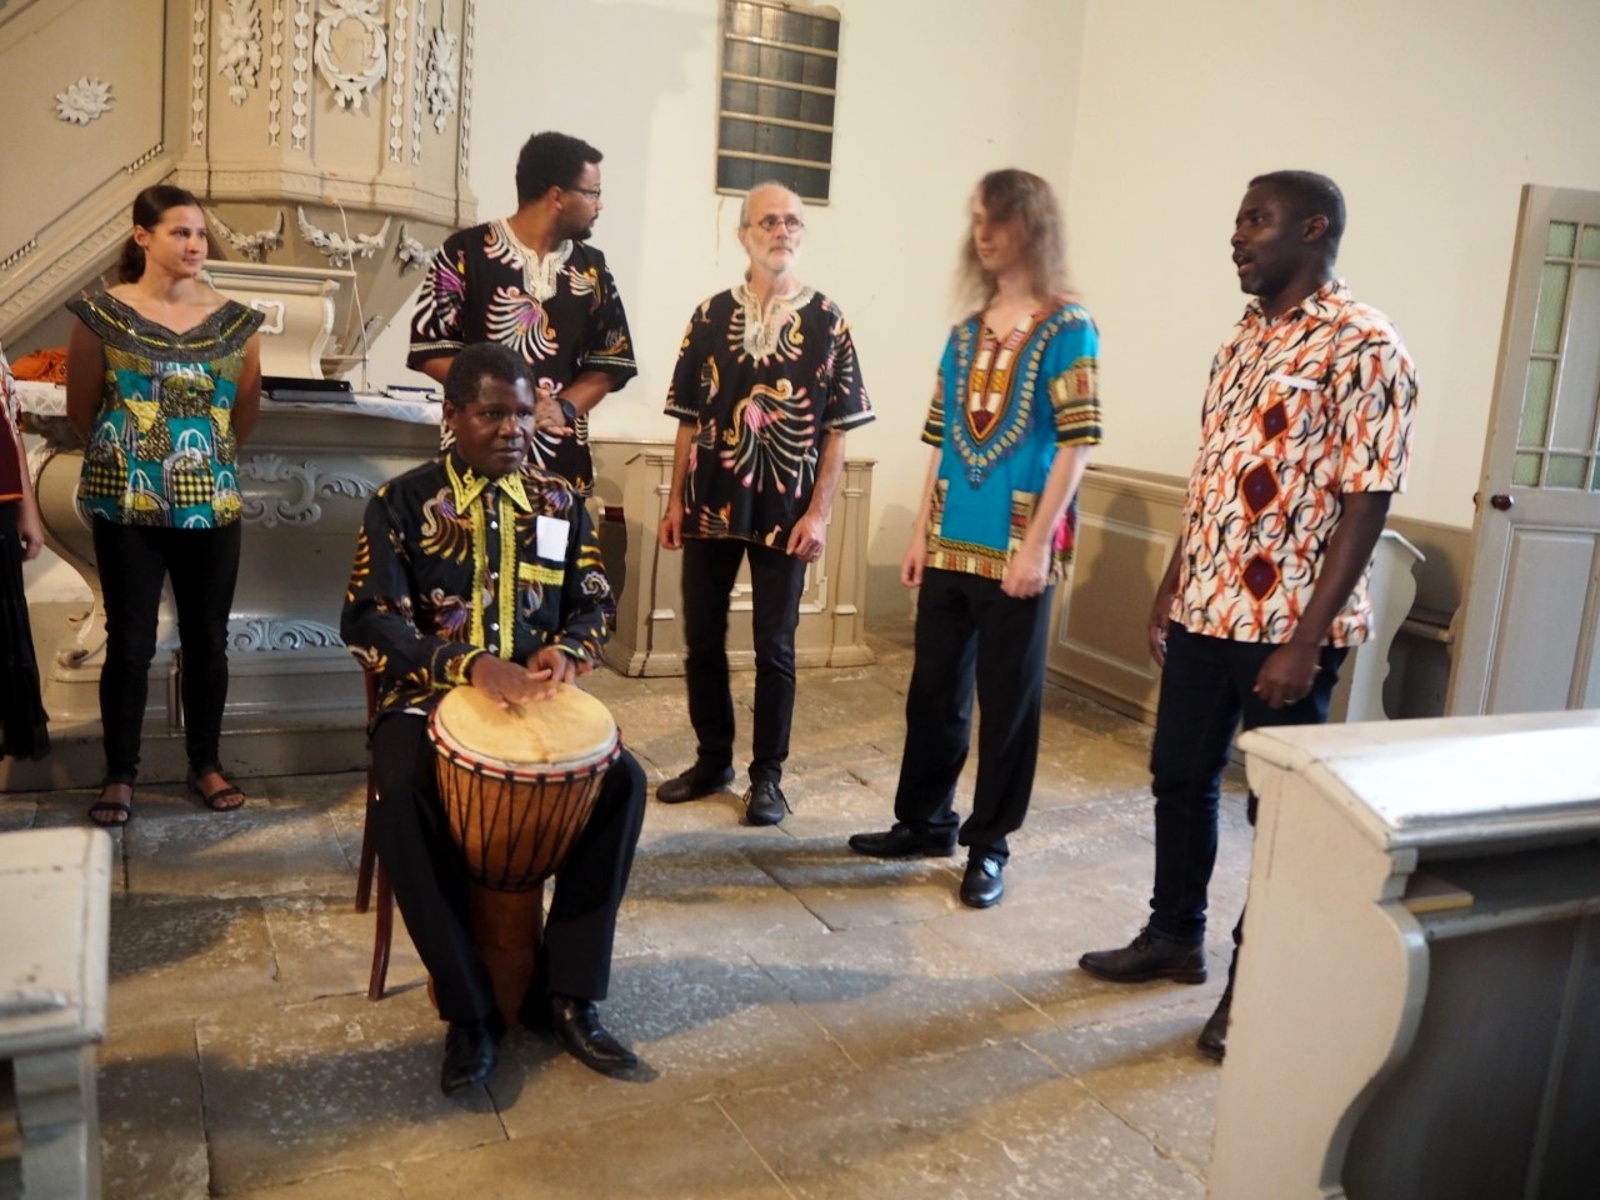 OBRAZEM: V kostele zněly africké rytmy a melodie - Nymburský deník